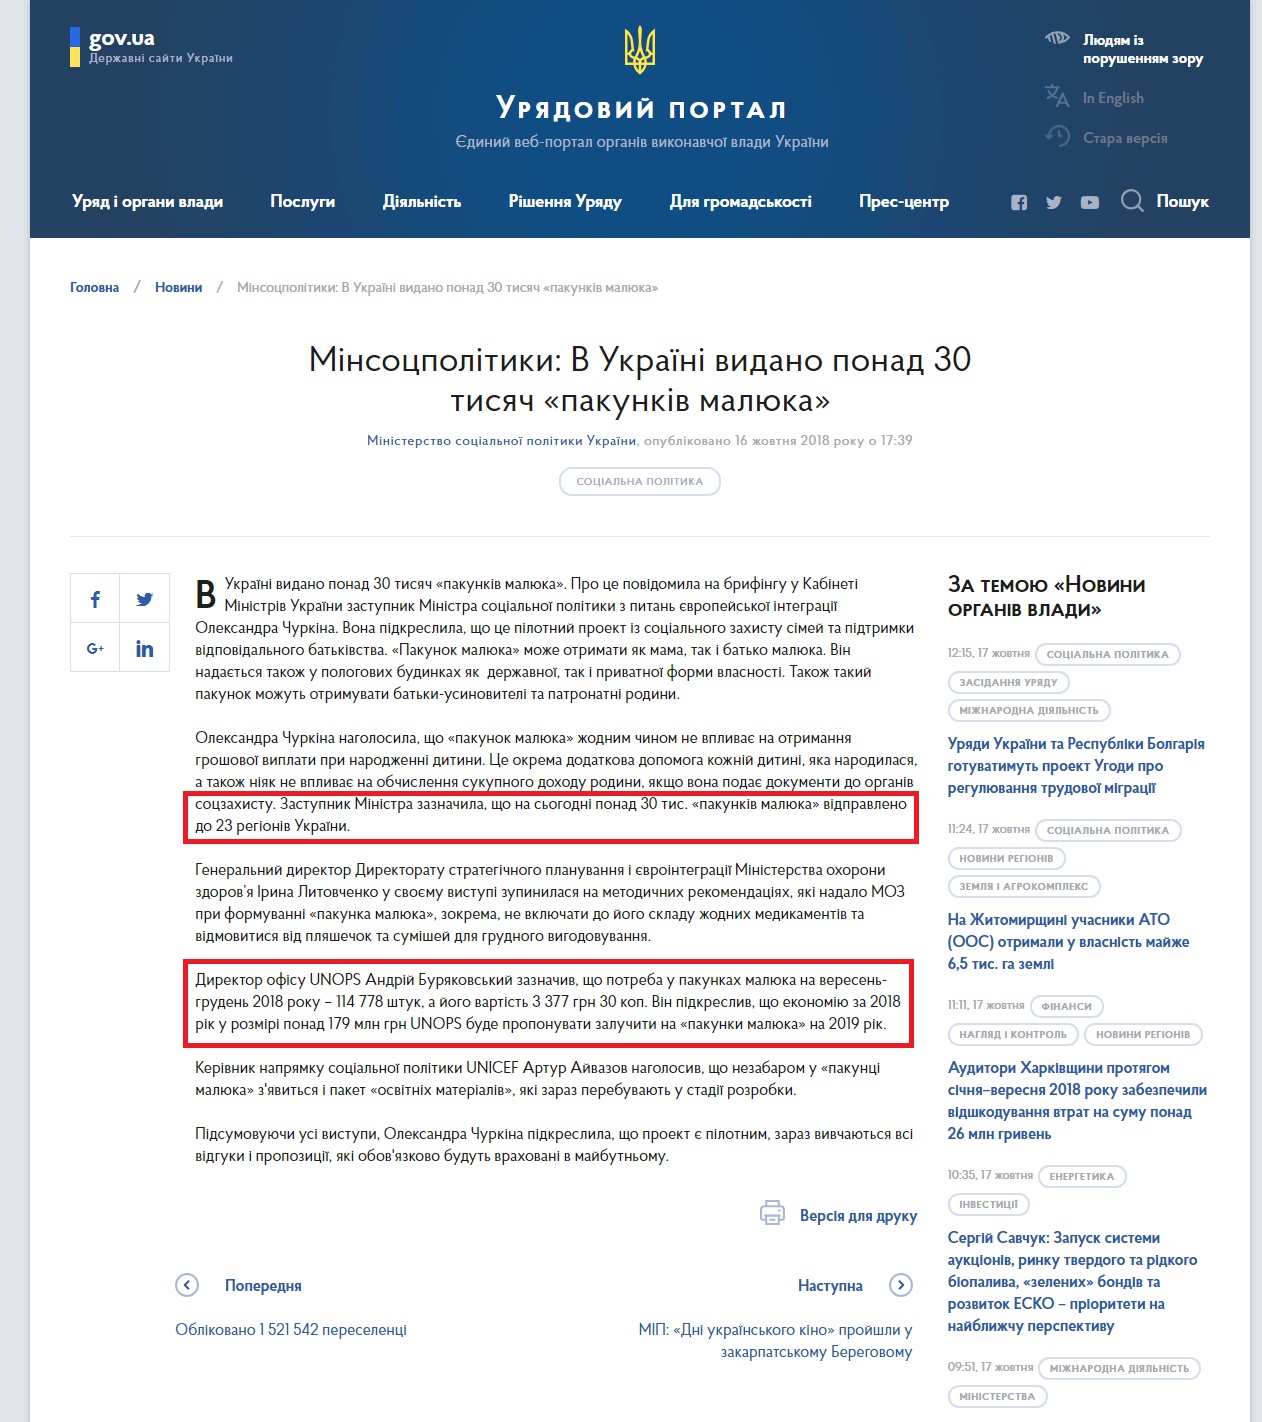 https://www.kmu.gov.ua/ua/news/minsocpolitiki-v-ukrayini-vidano-ponad-30-tisyach-pakunkiv-malyuka